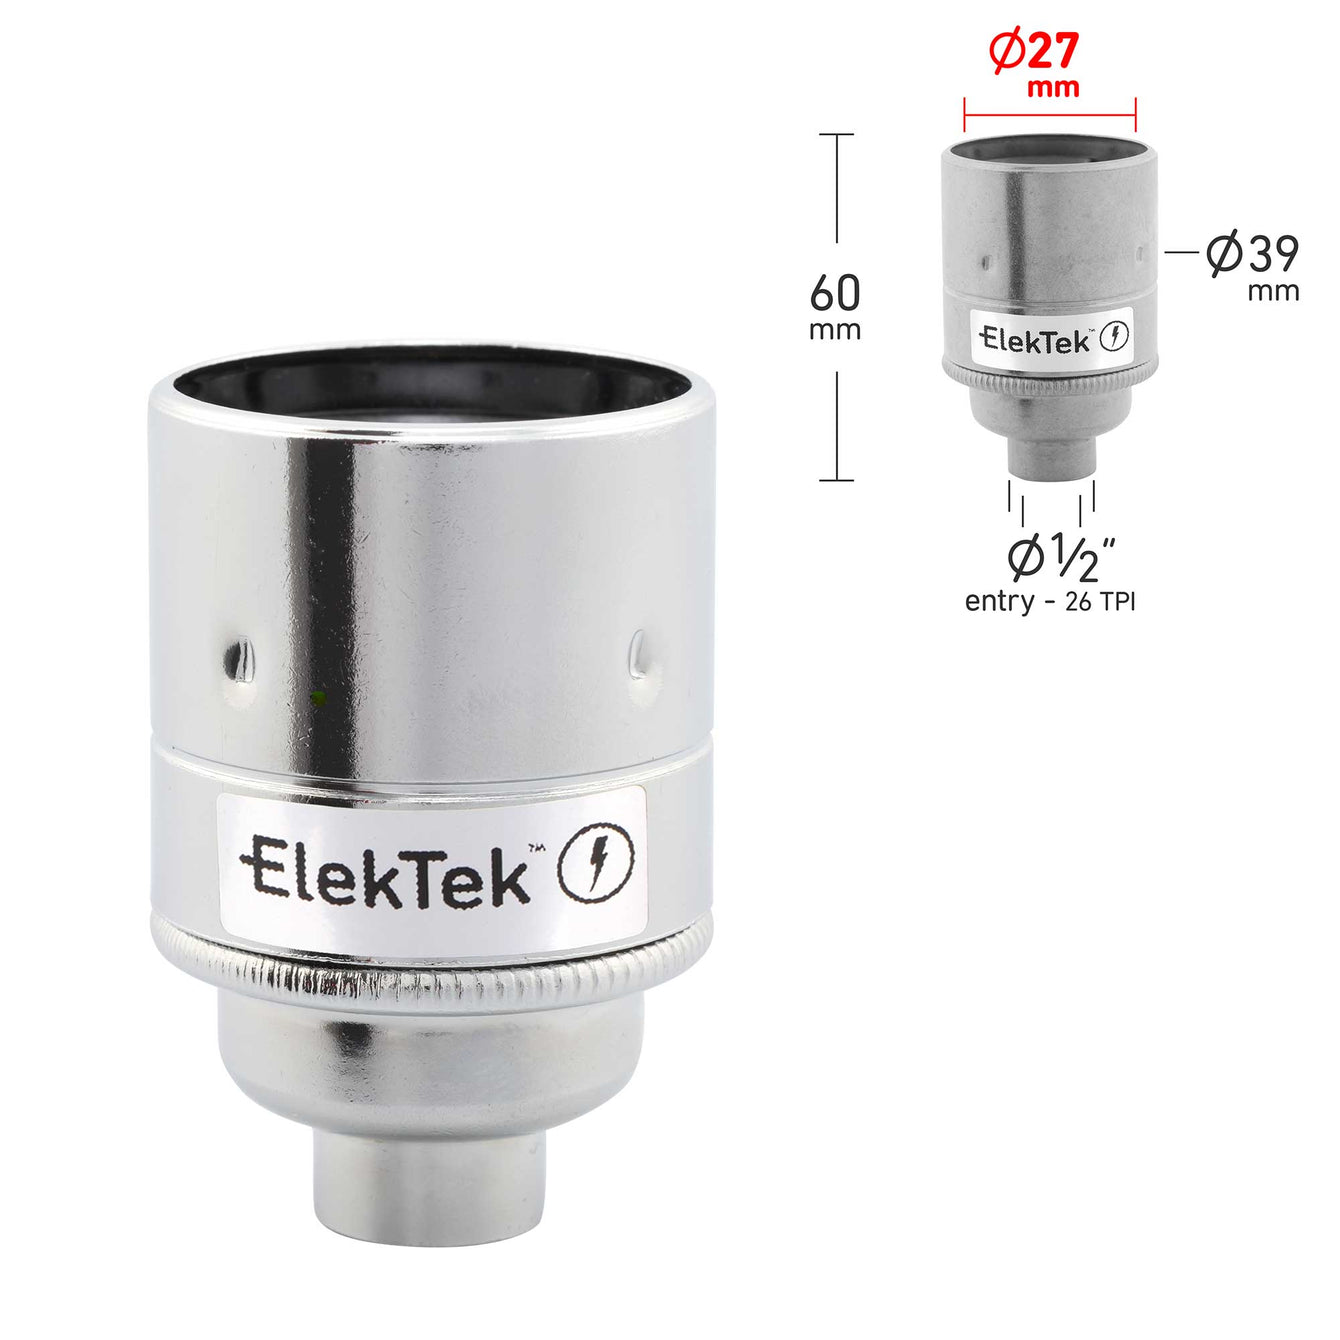 ElekTek ES Edison Screw E27 Lamp Holder Plain Skirt 10mm or Half Inch Entry Ideal for Vintage Filament Bulbs Brass 